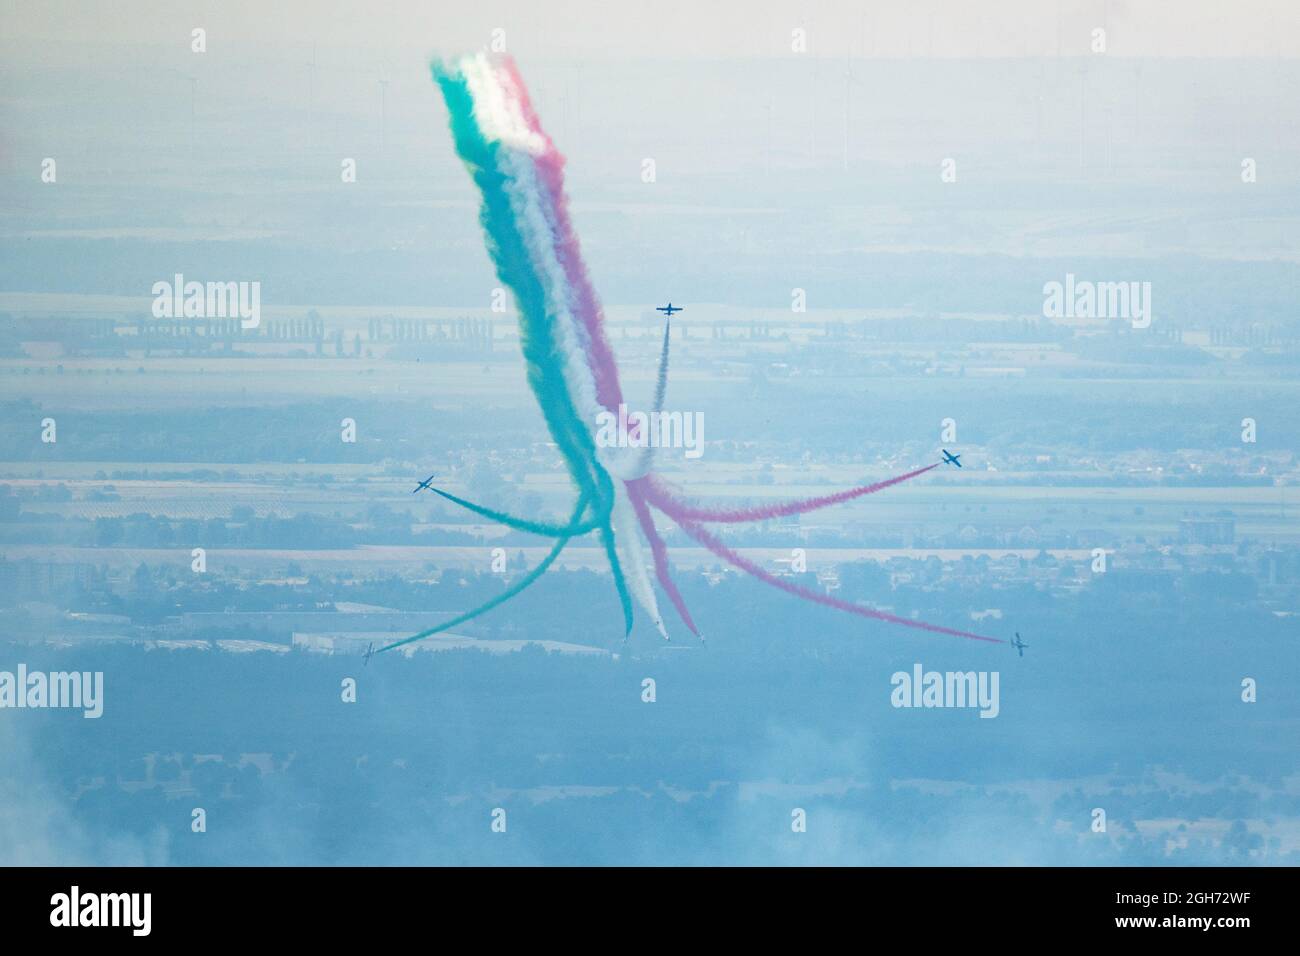 KUCHYNA, ESLOVAQUIA - 5 DE SEPTIEMBRE de 2021: Vuelo del equipo acrobático italiano Frecce Tricolori en estrecha formación en SIAF 2021 airshow. Foto de stock